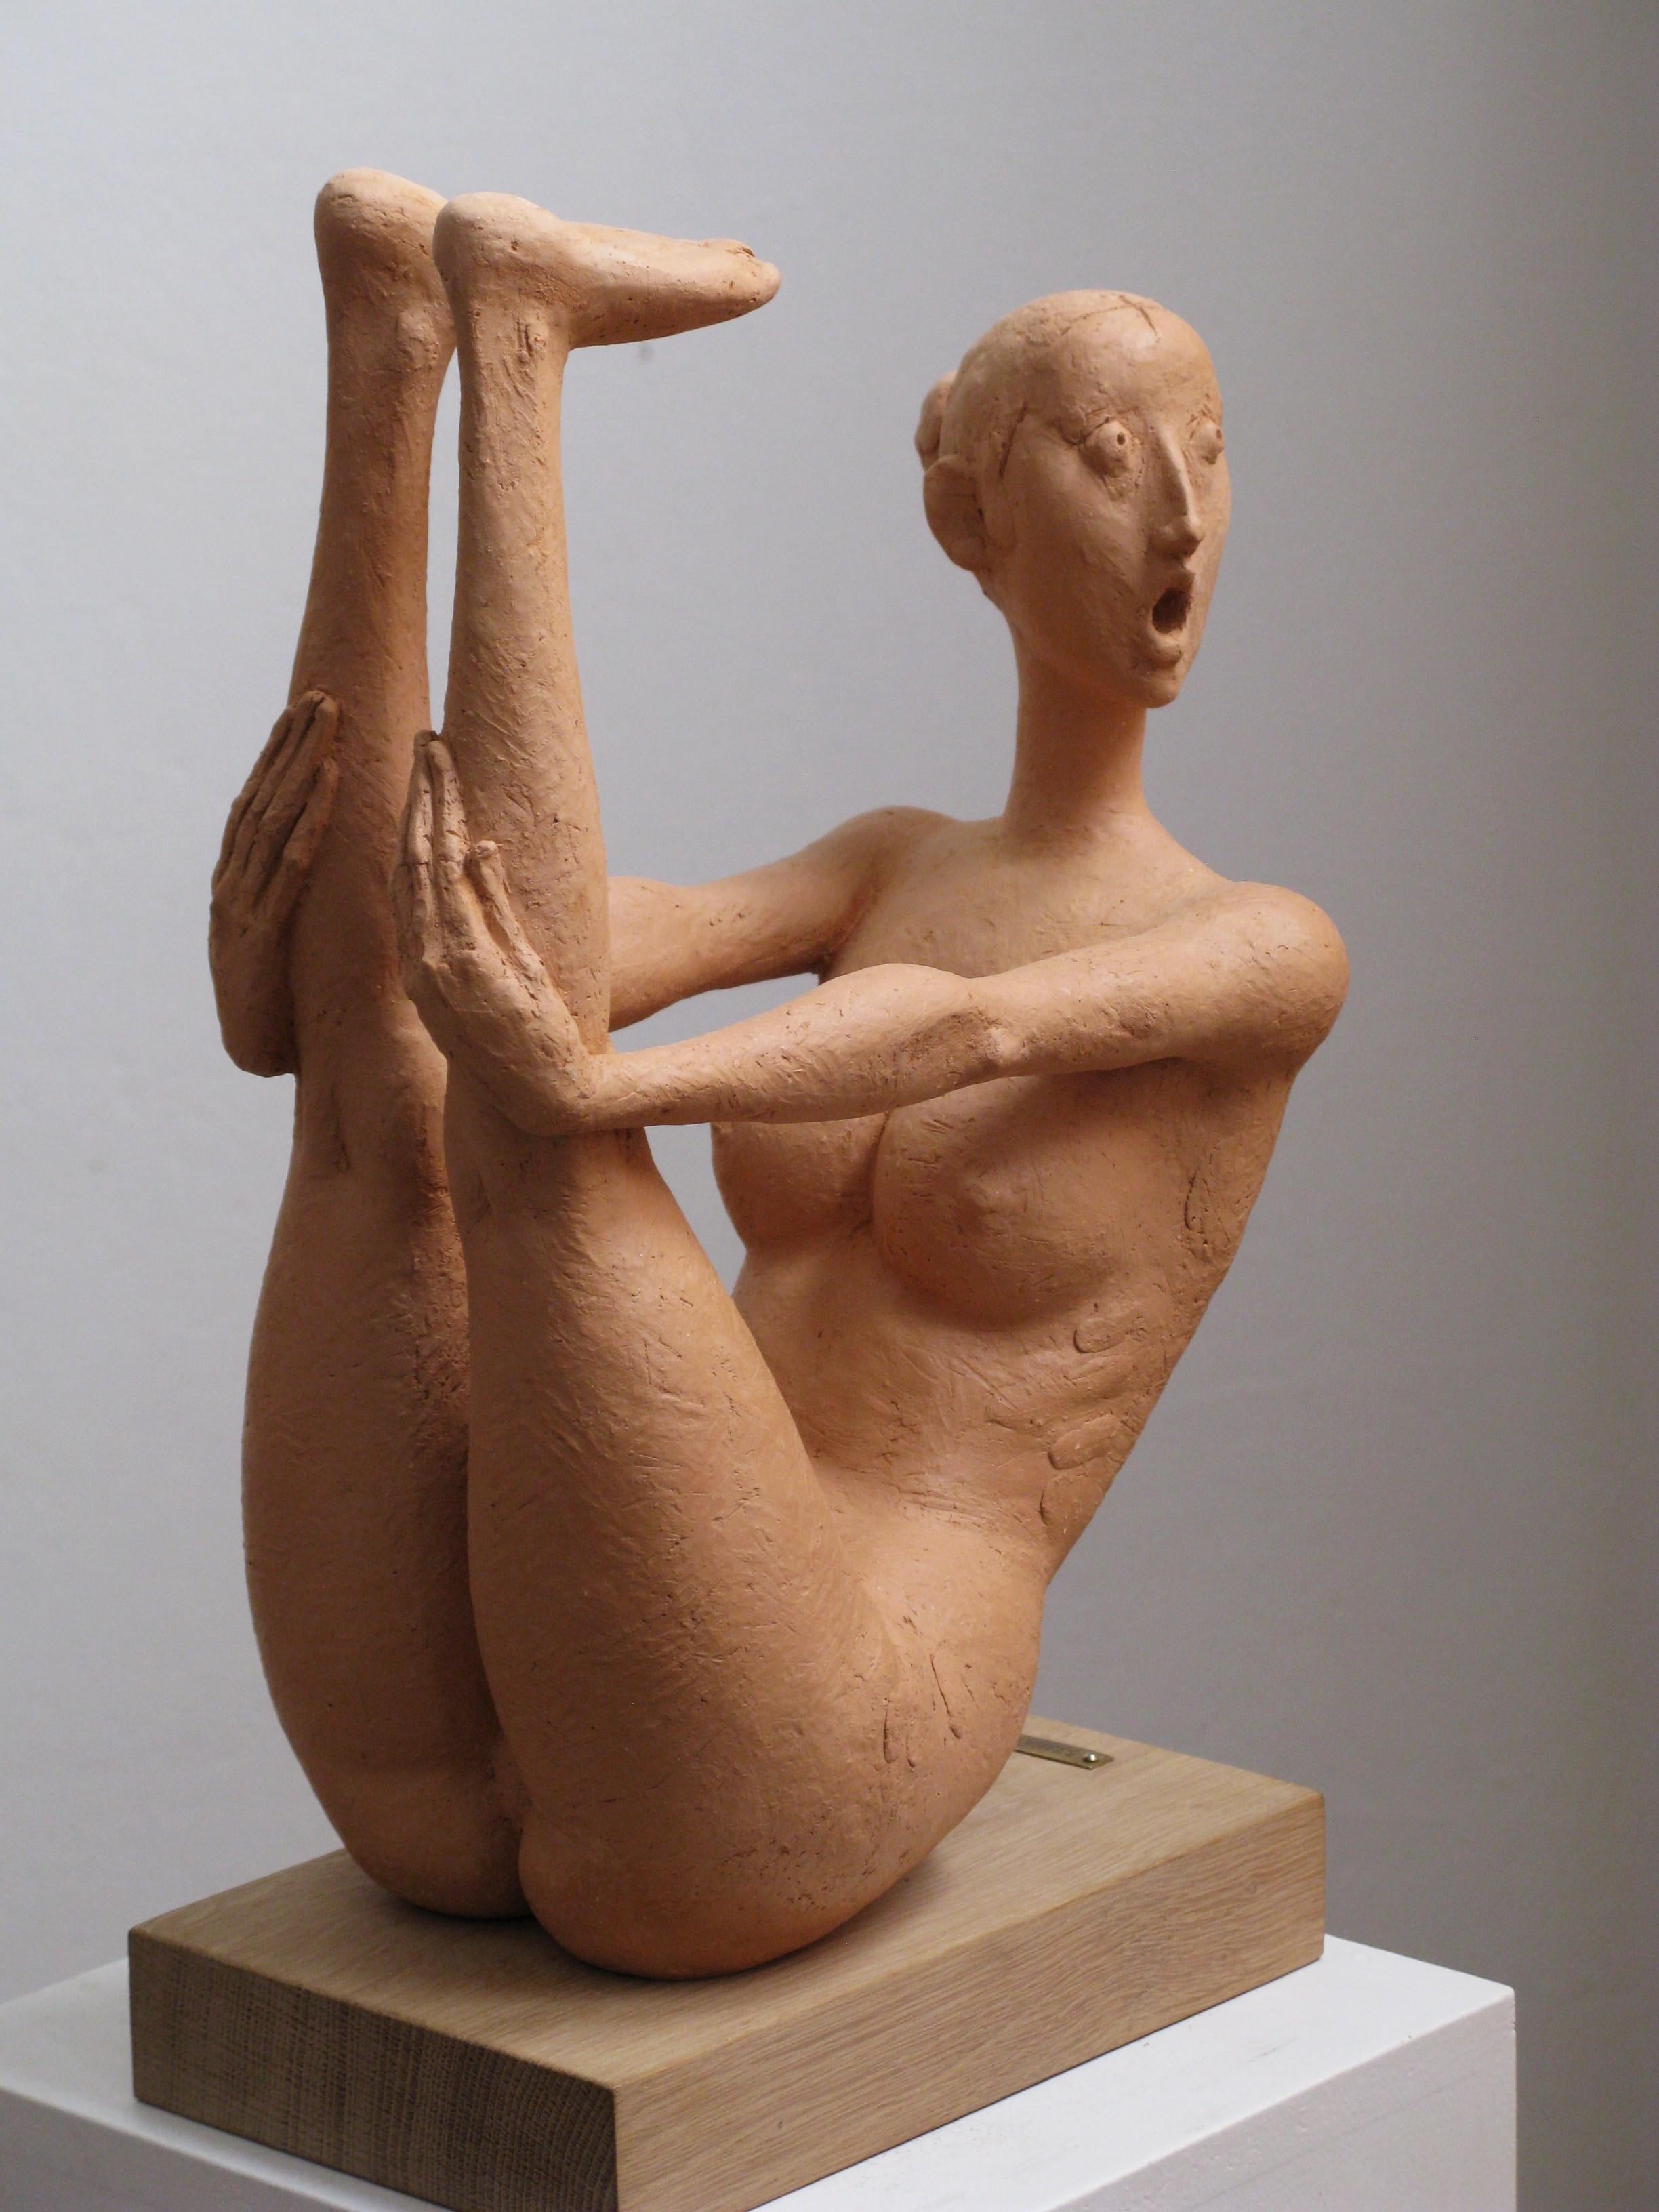 Béla Szakáts Nude Sculpture - Fear - 21st Century, Figurative Sculpture, Nude, Beige, Contemporary